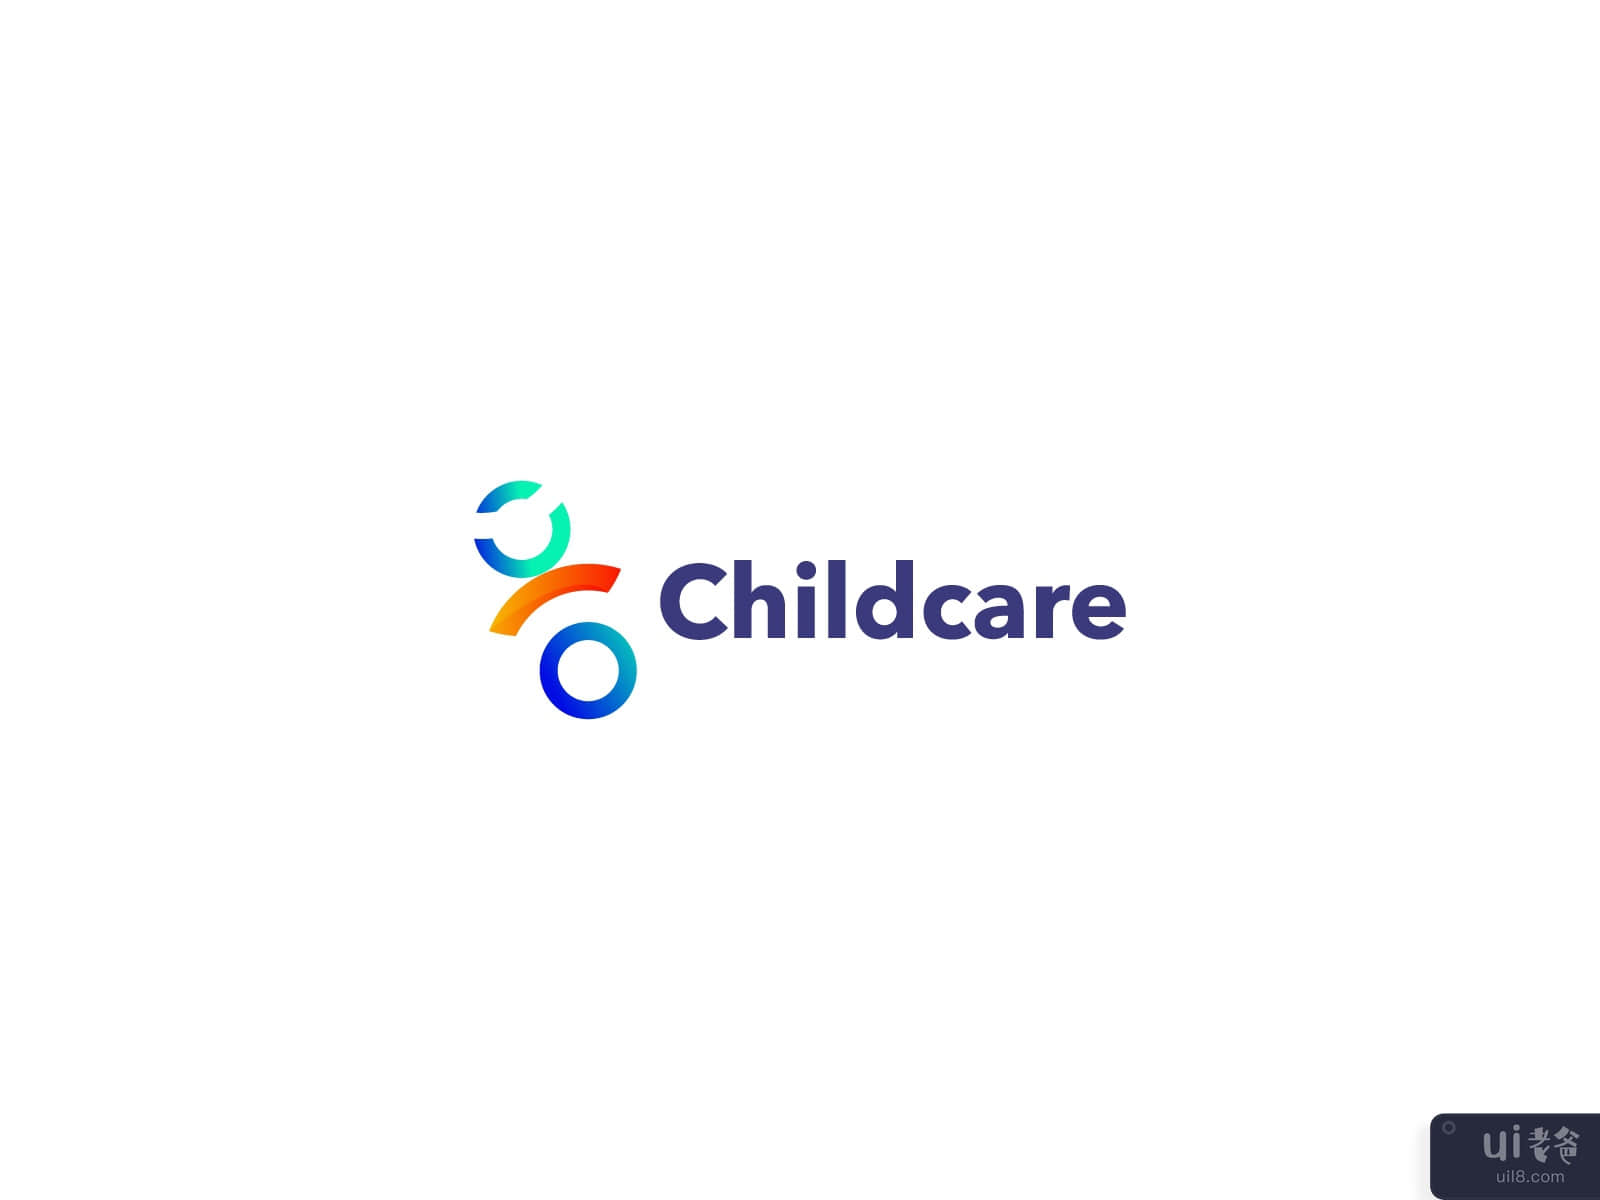 育儿基金会标志设计-现代标志(Childcare Foundation Logo Design - Modern Logo)插图2